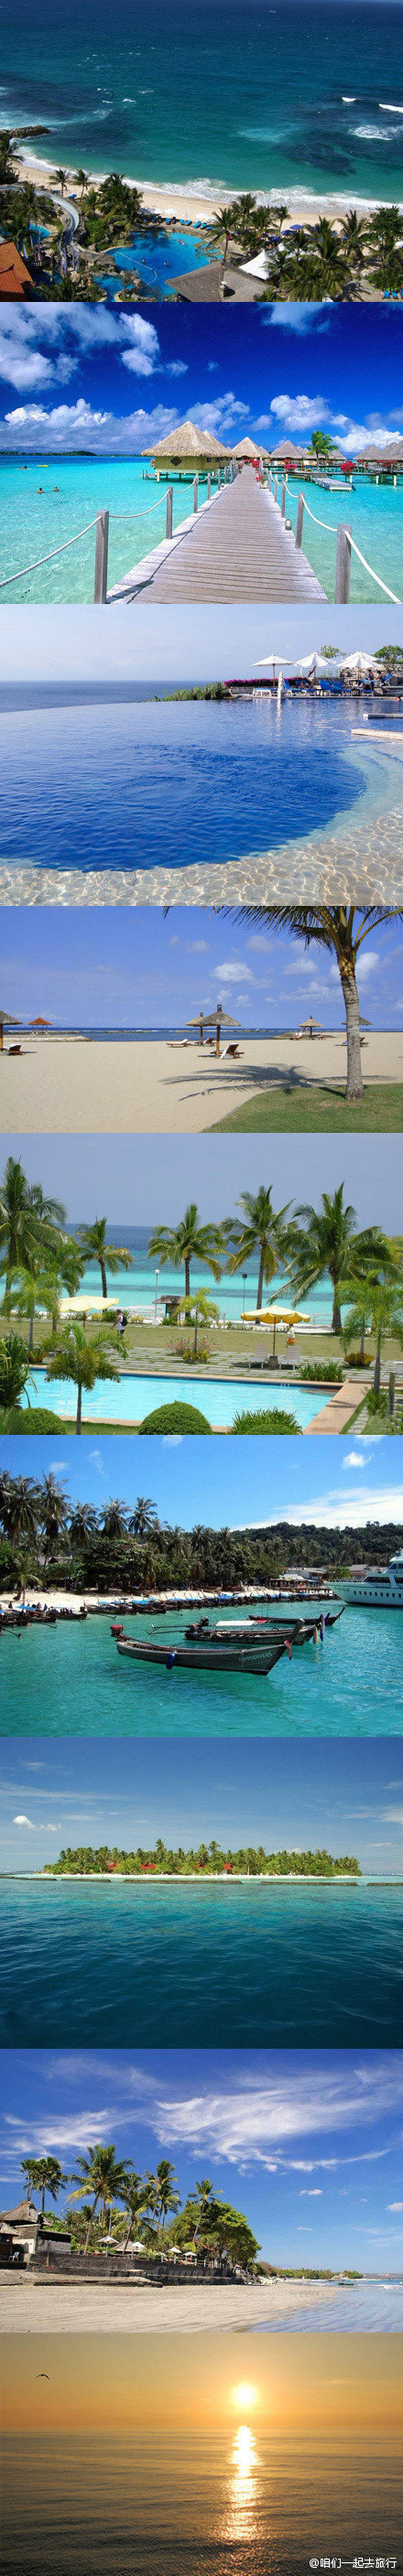 【巴厘岛·库塔海滩】库塔海滩(Kuta Beach)号称巴厘岛上最美丽的海岸，这里的海滩平坦、沙粒洁白、细腻,是个玩冲浪、滑板的乐园。